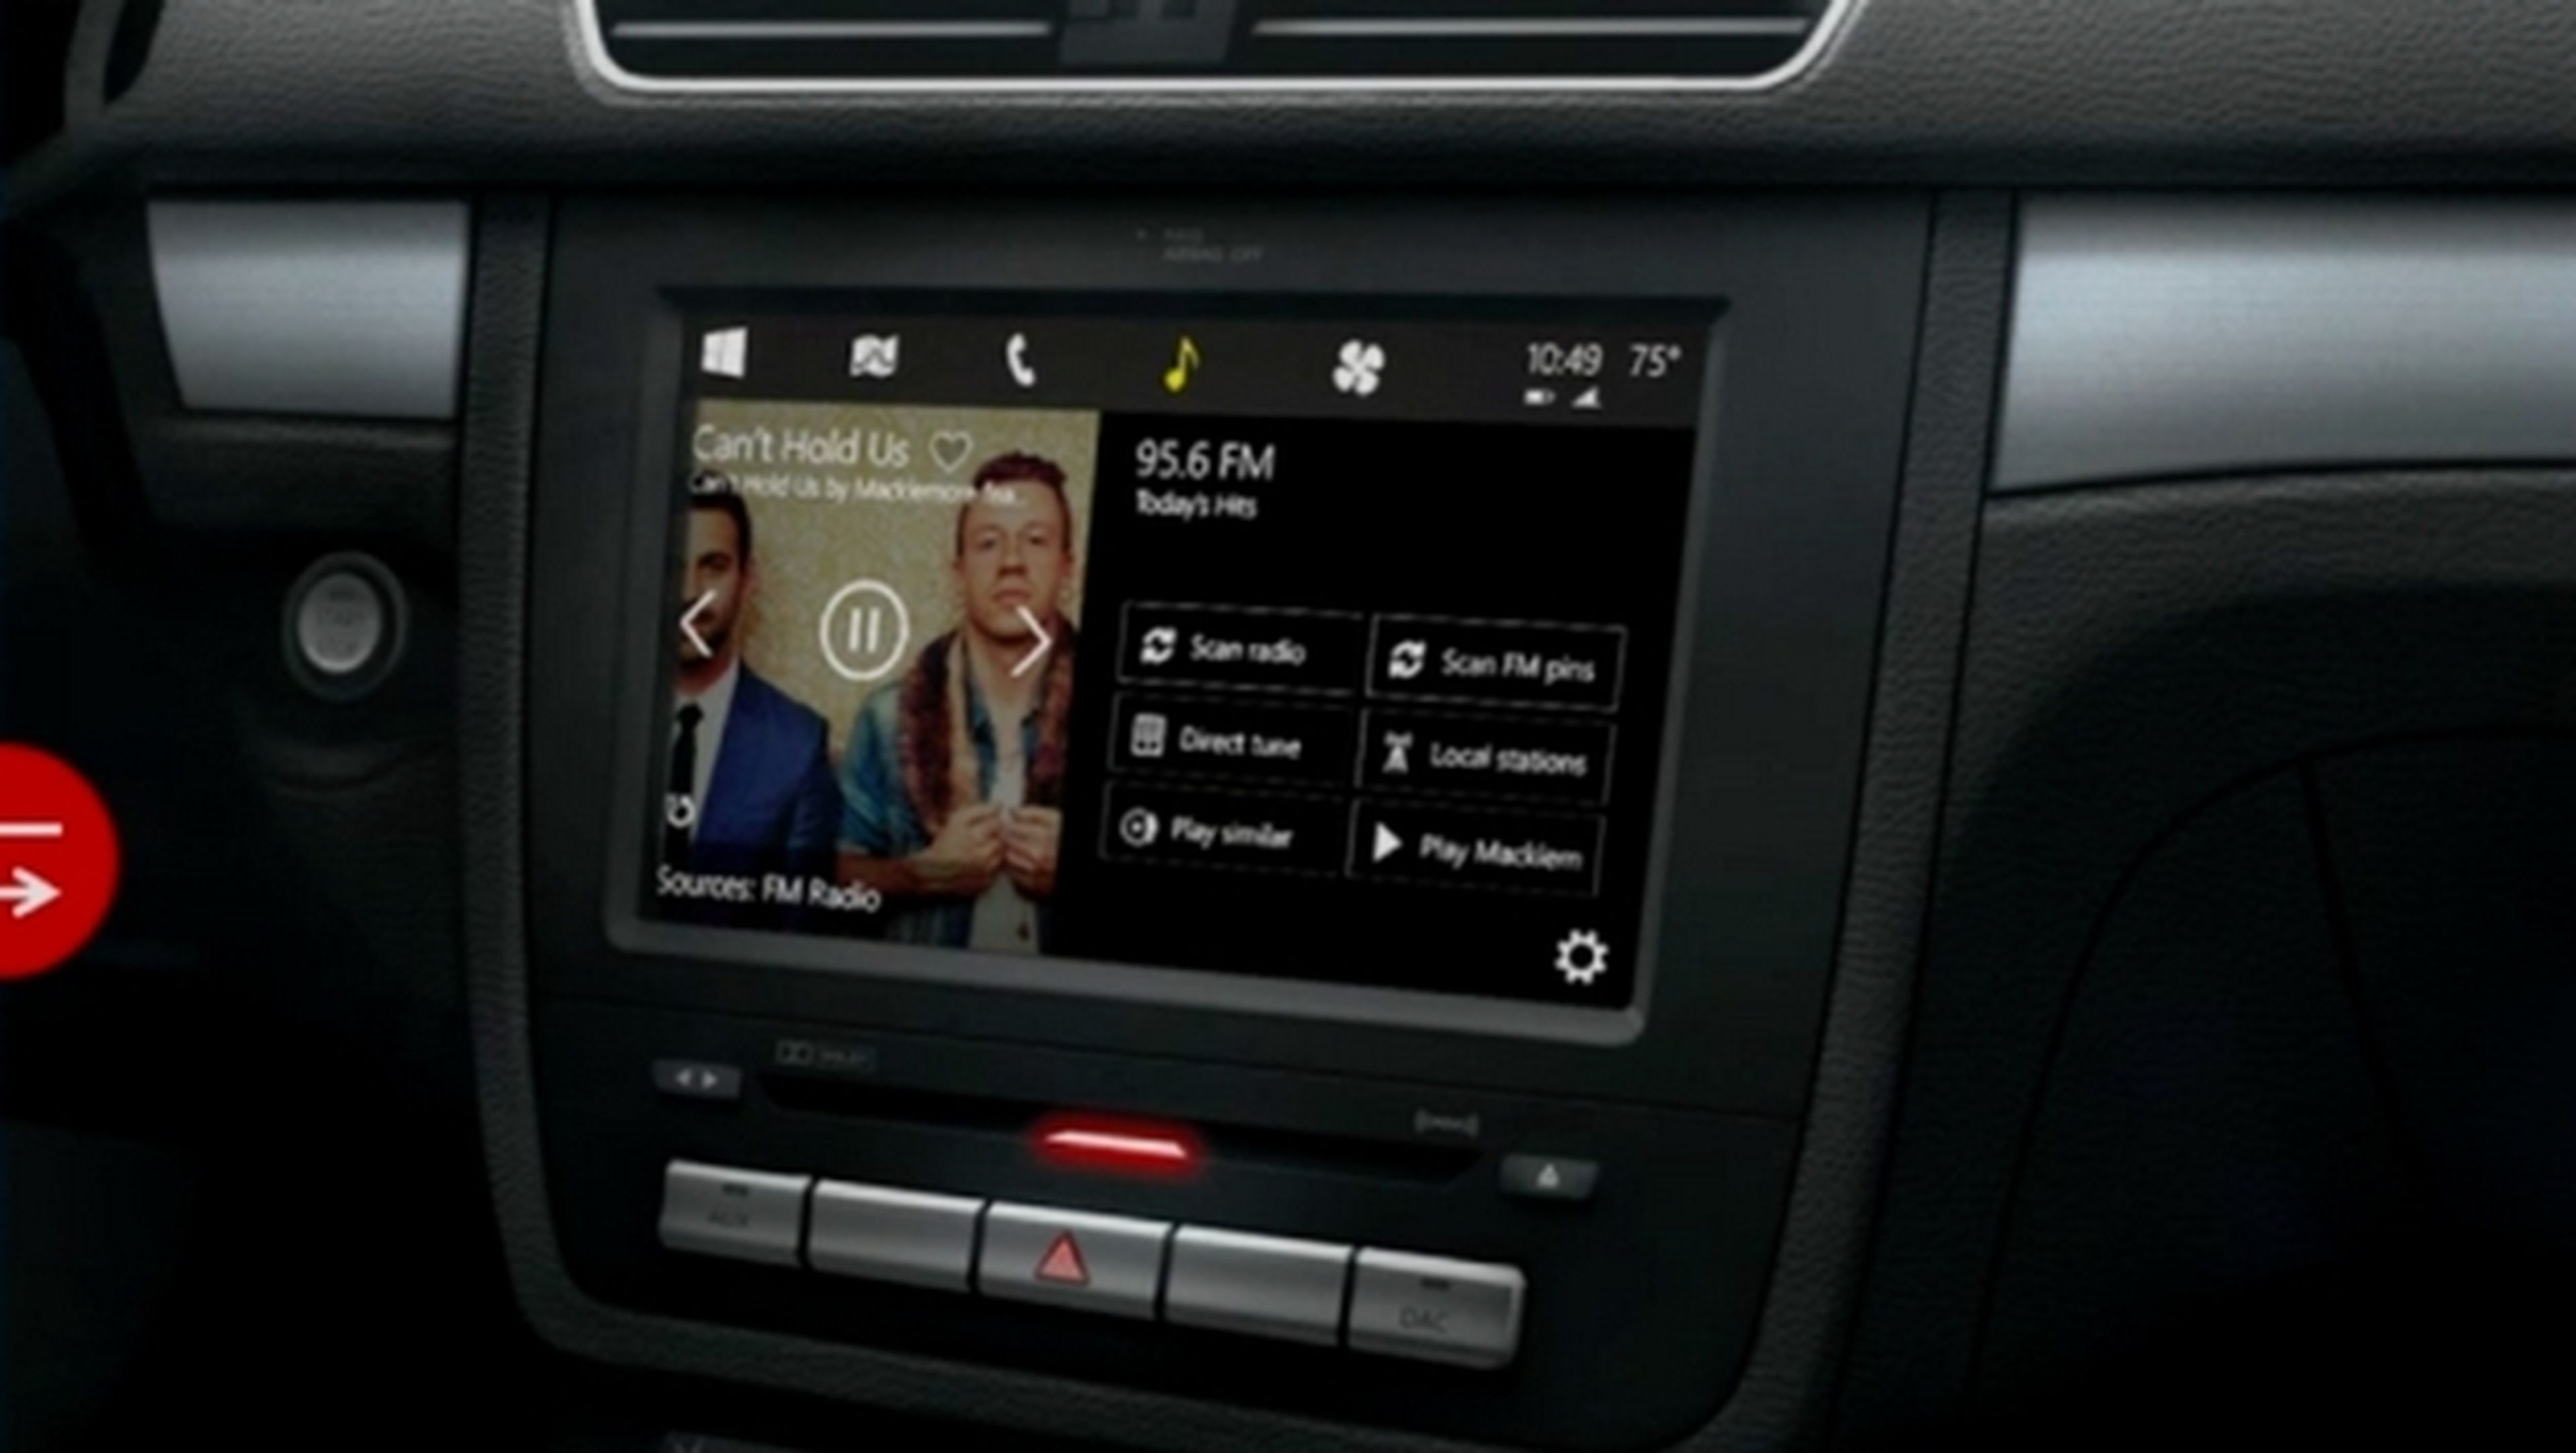 Windows in the Car, la tecnología de coche inteligente de Microsoft